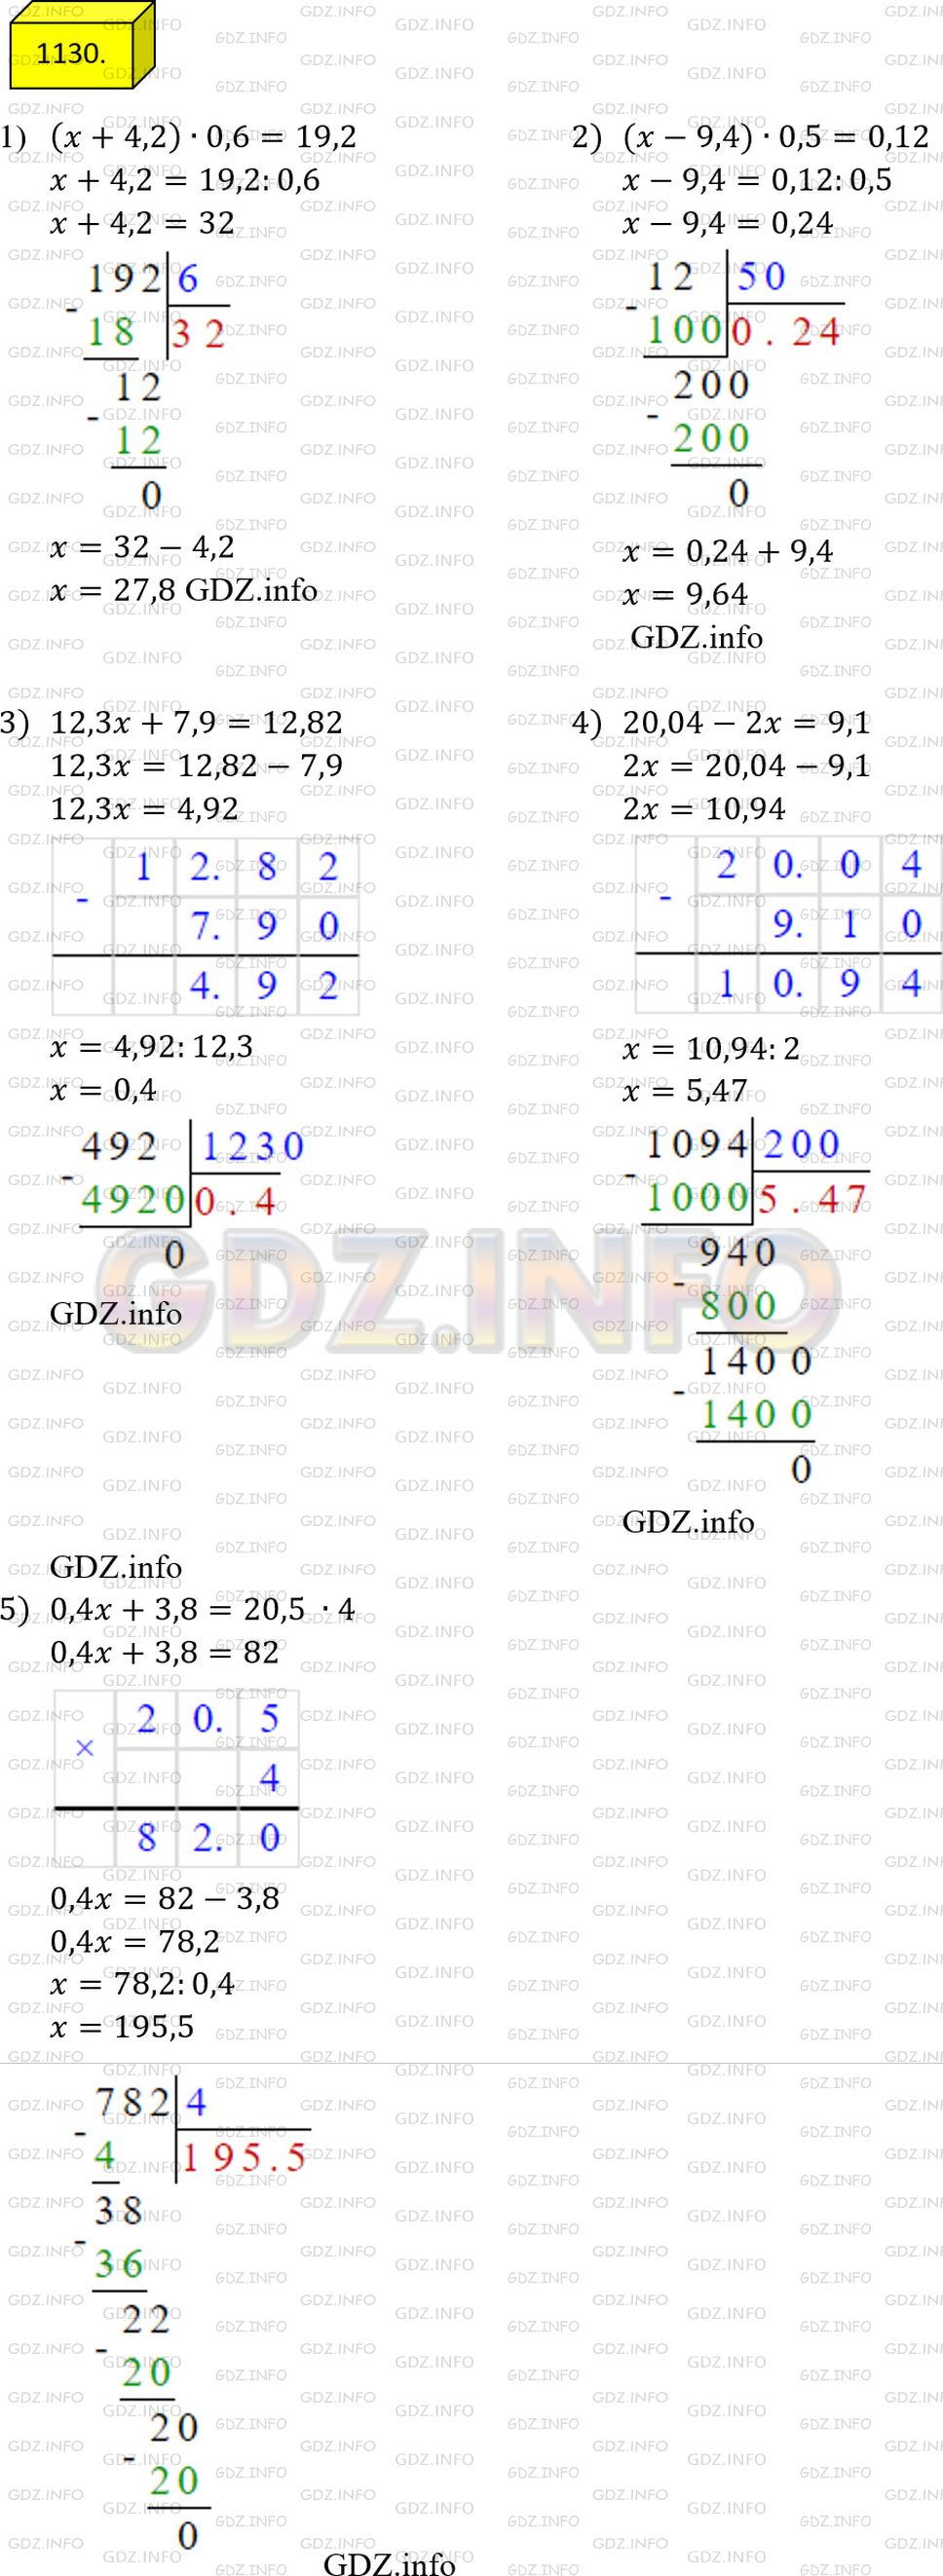 Фото ответа 4 на Задание 1130 из ГДЗ по Математике за 5 класс: А.Г. Мерзляк, В.Б. Полонский, М.С. Якир. 2014г.